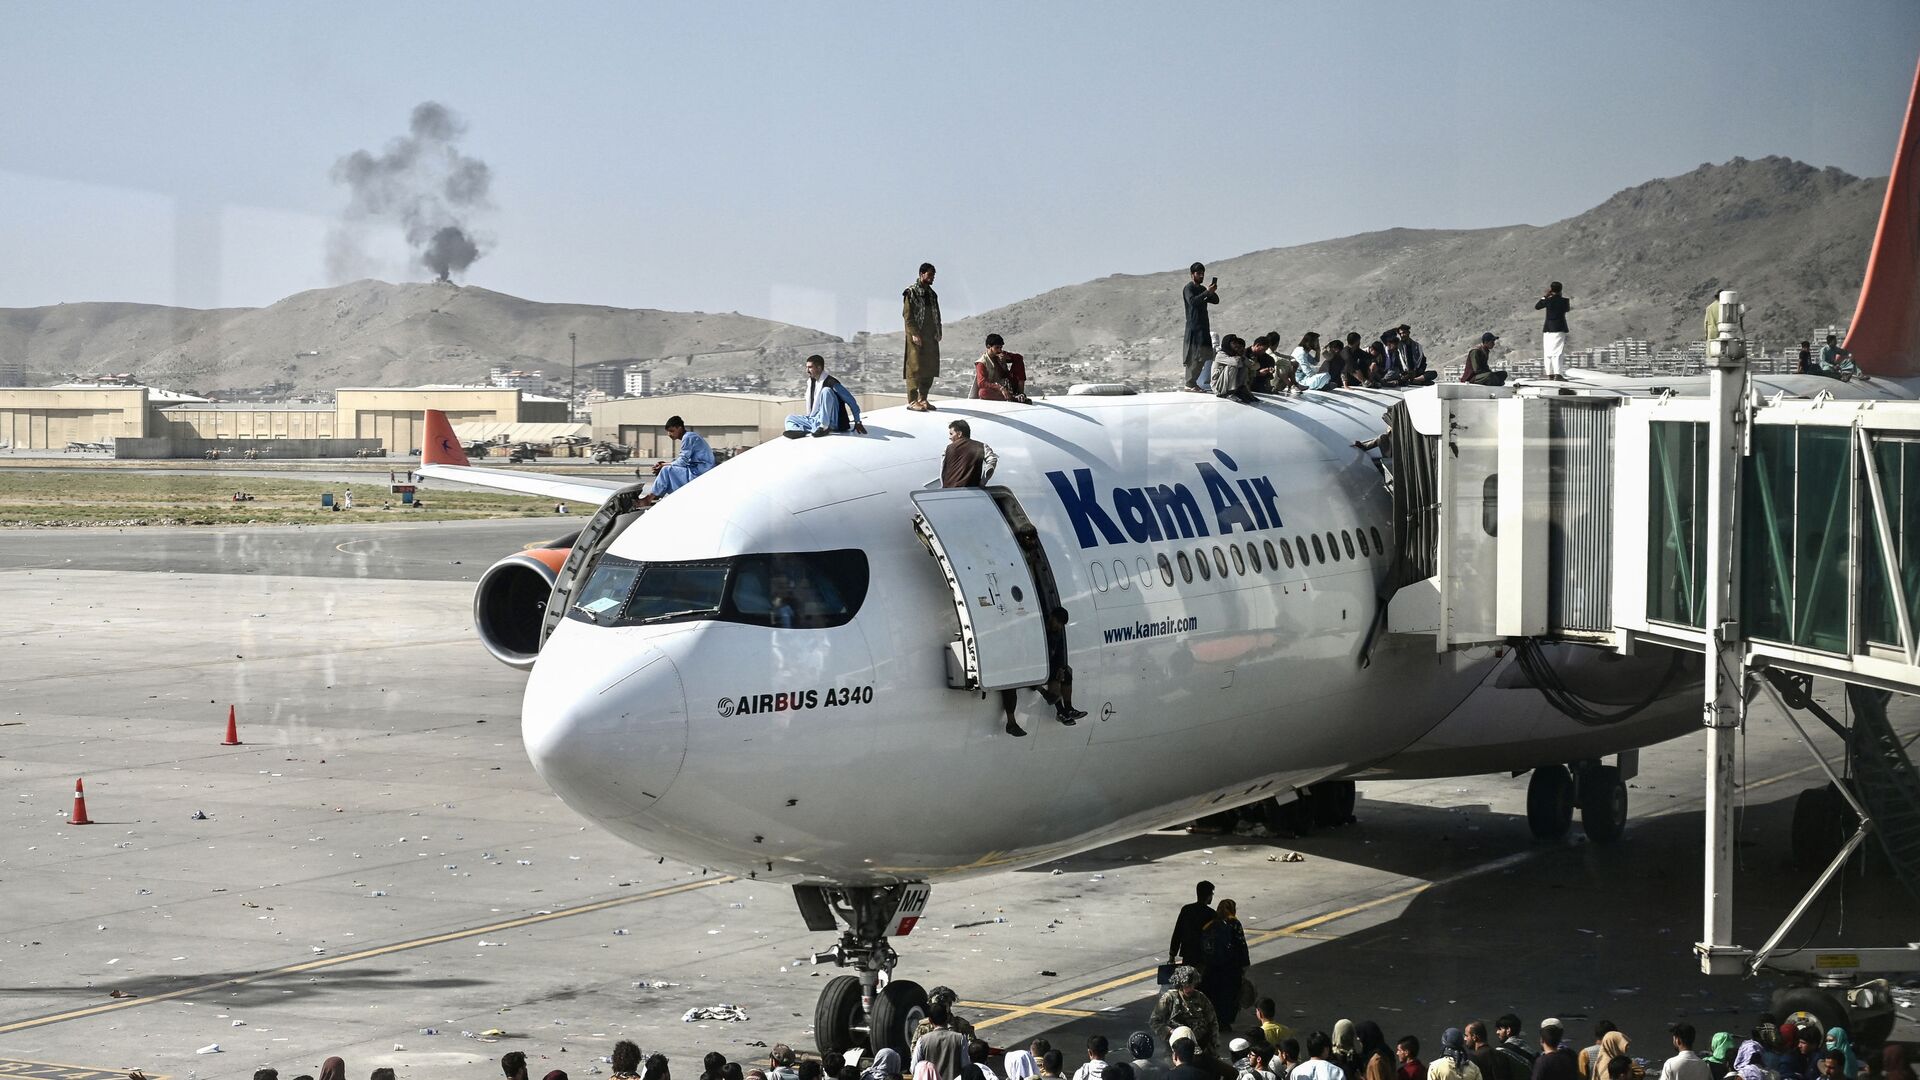 Афганцы забираются на самолет в аэропорту после вступления талибов в Кабул - Sputnik Молдова, 1920, 22.08.2021